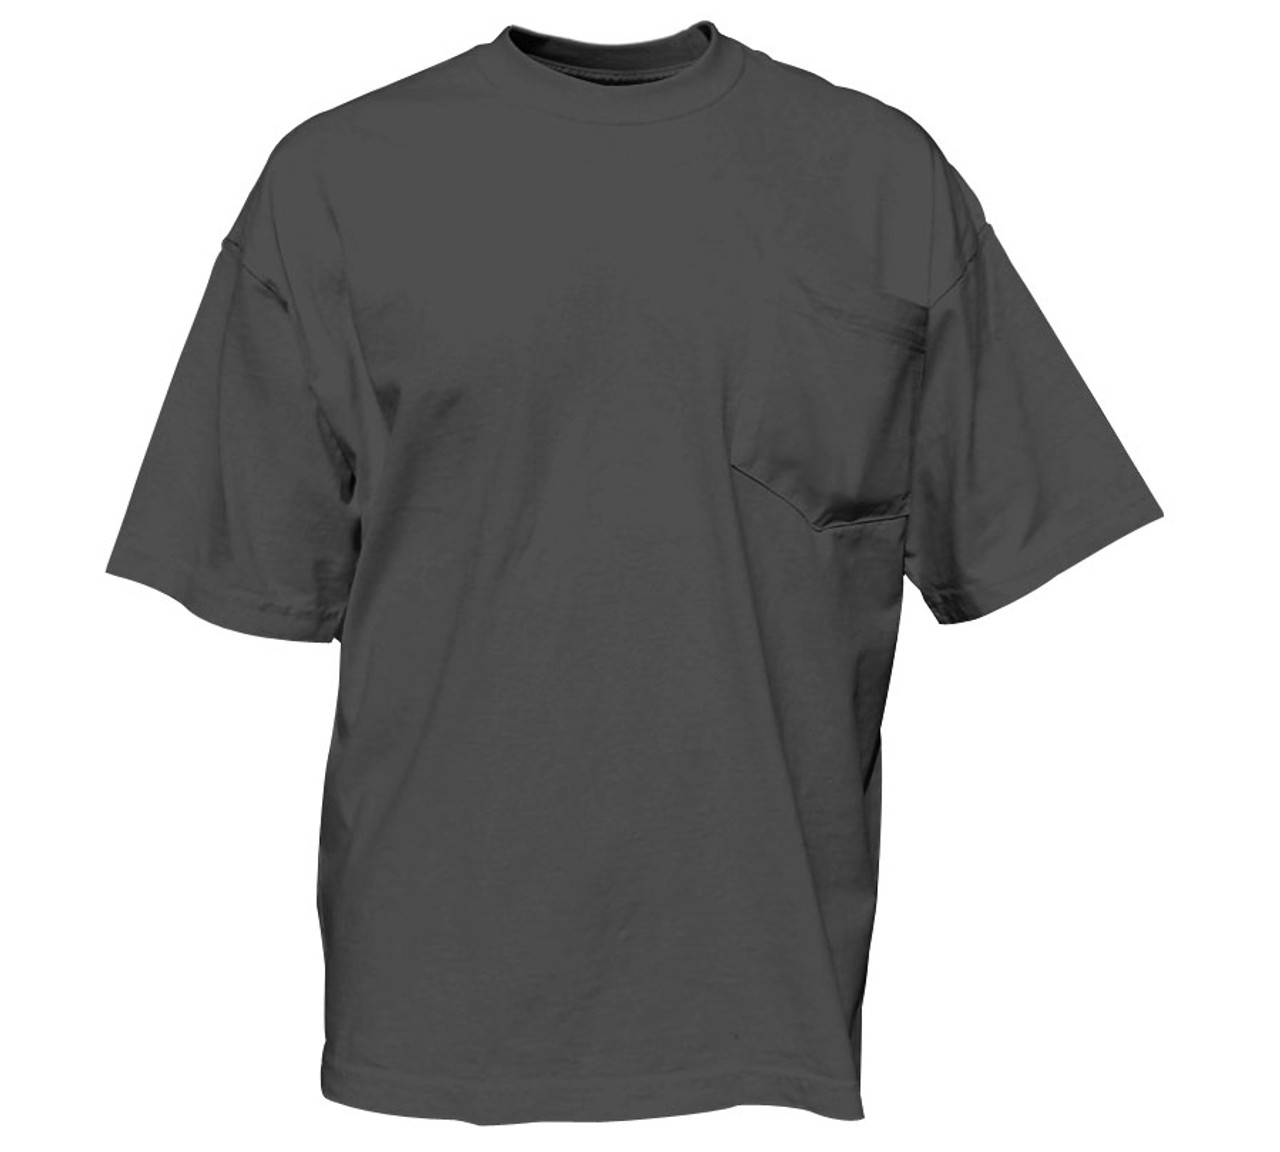 Heavy Duty Pocket T-Shirts